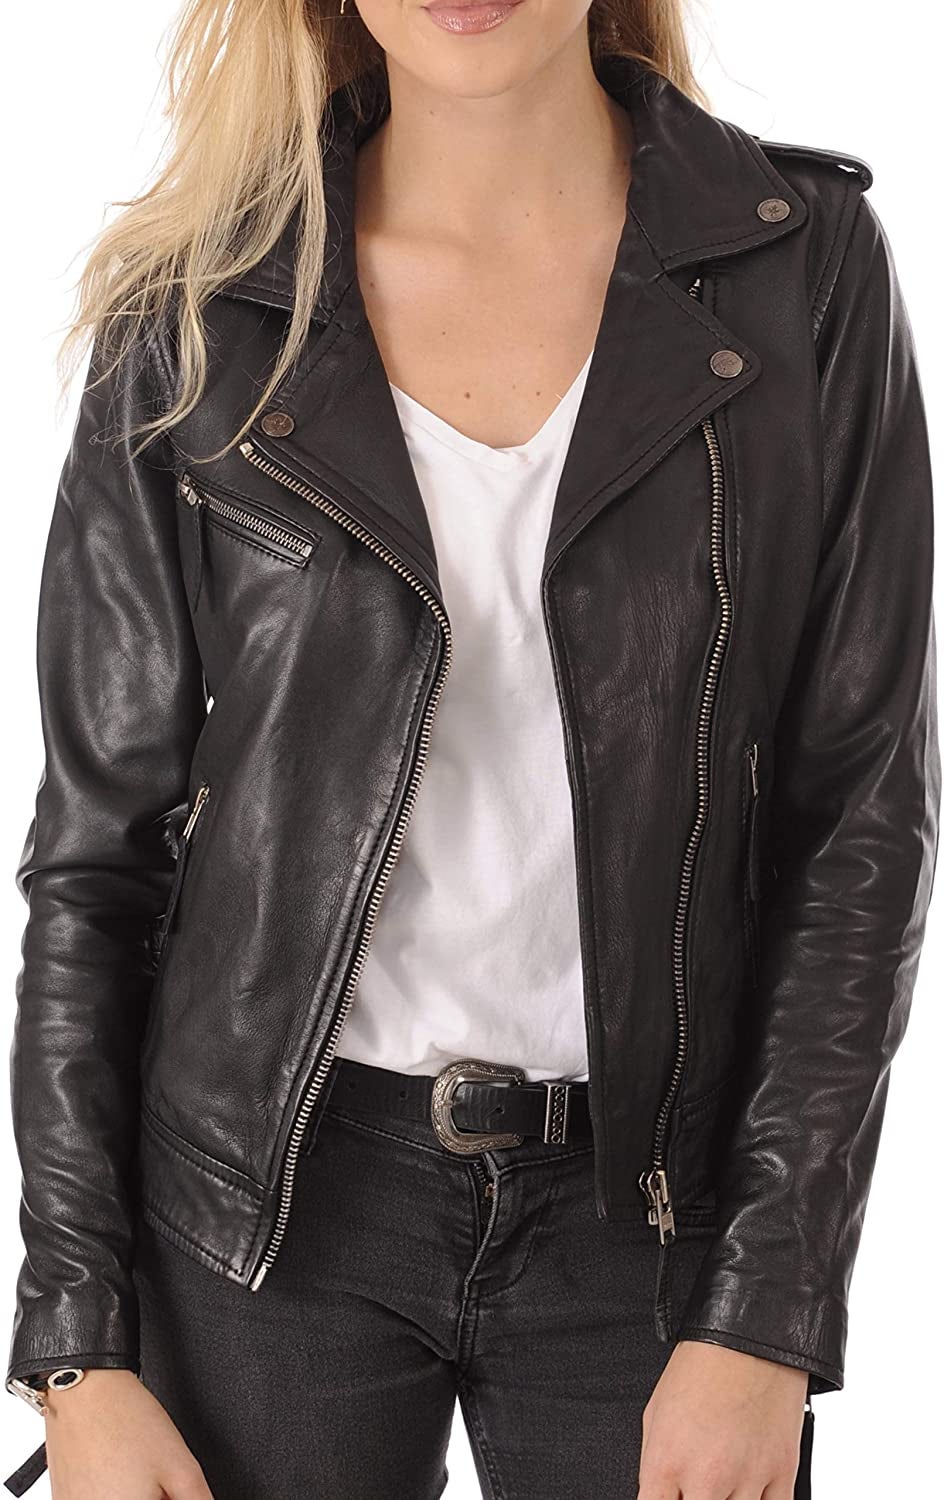 model wearing the jacket in black